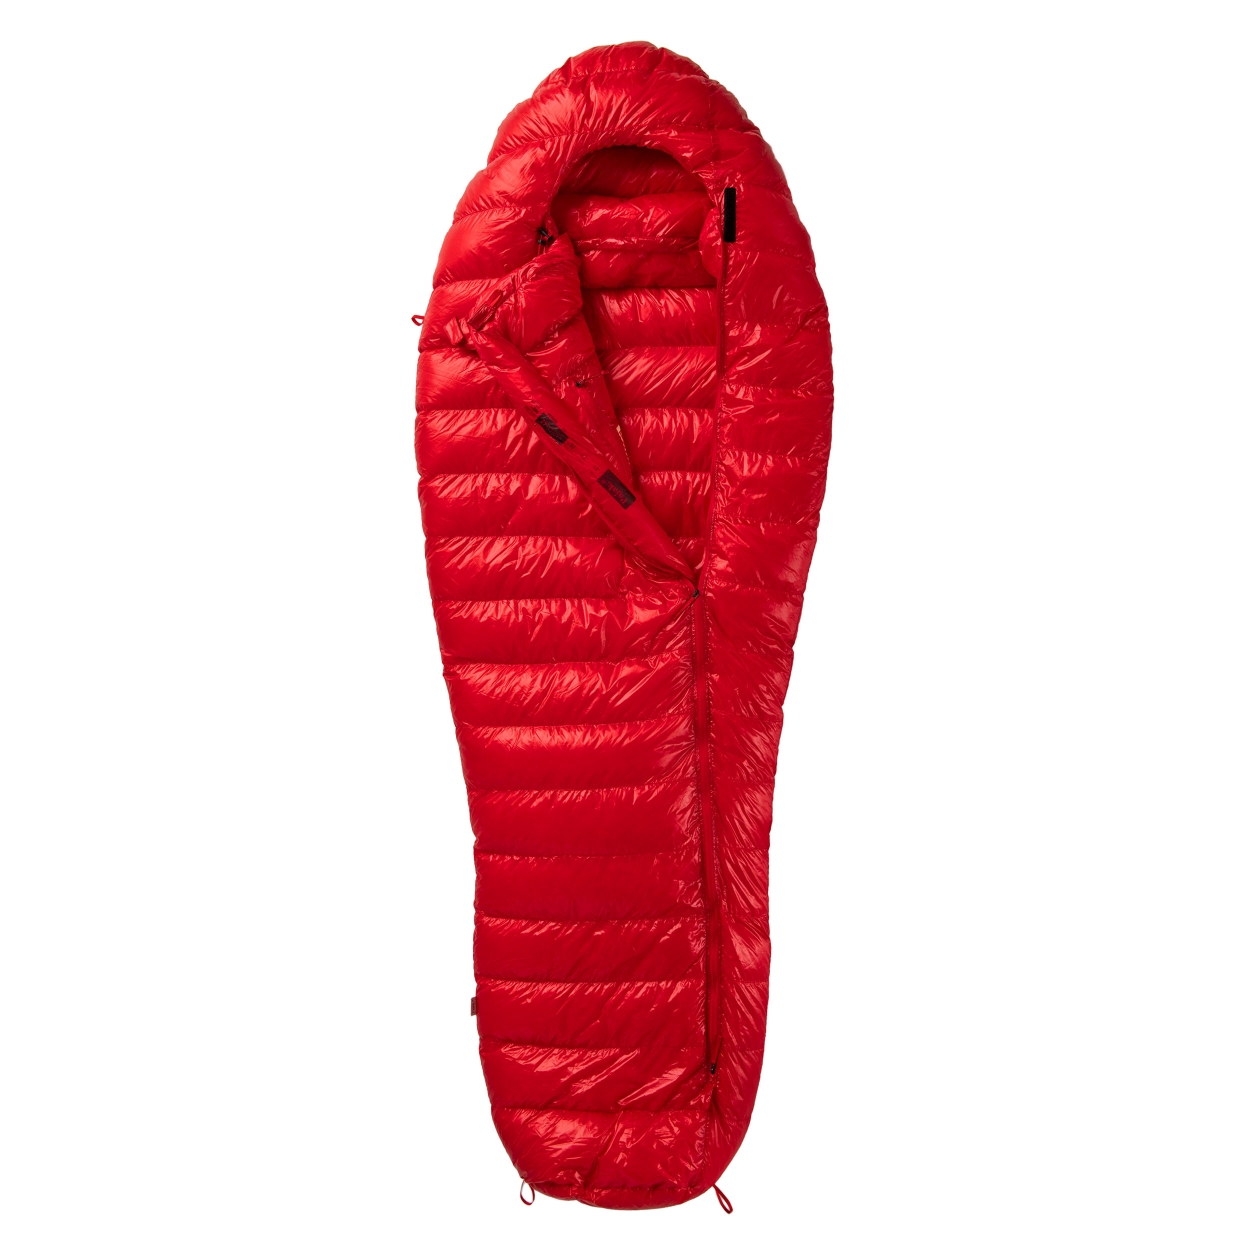 RADICAL, 4Z sleeping bag, long, red